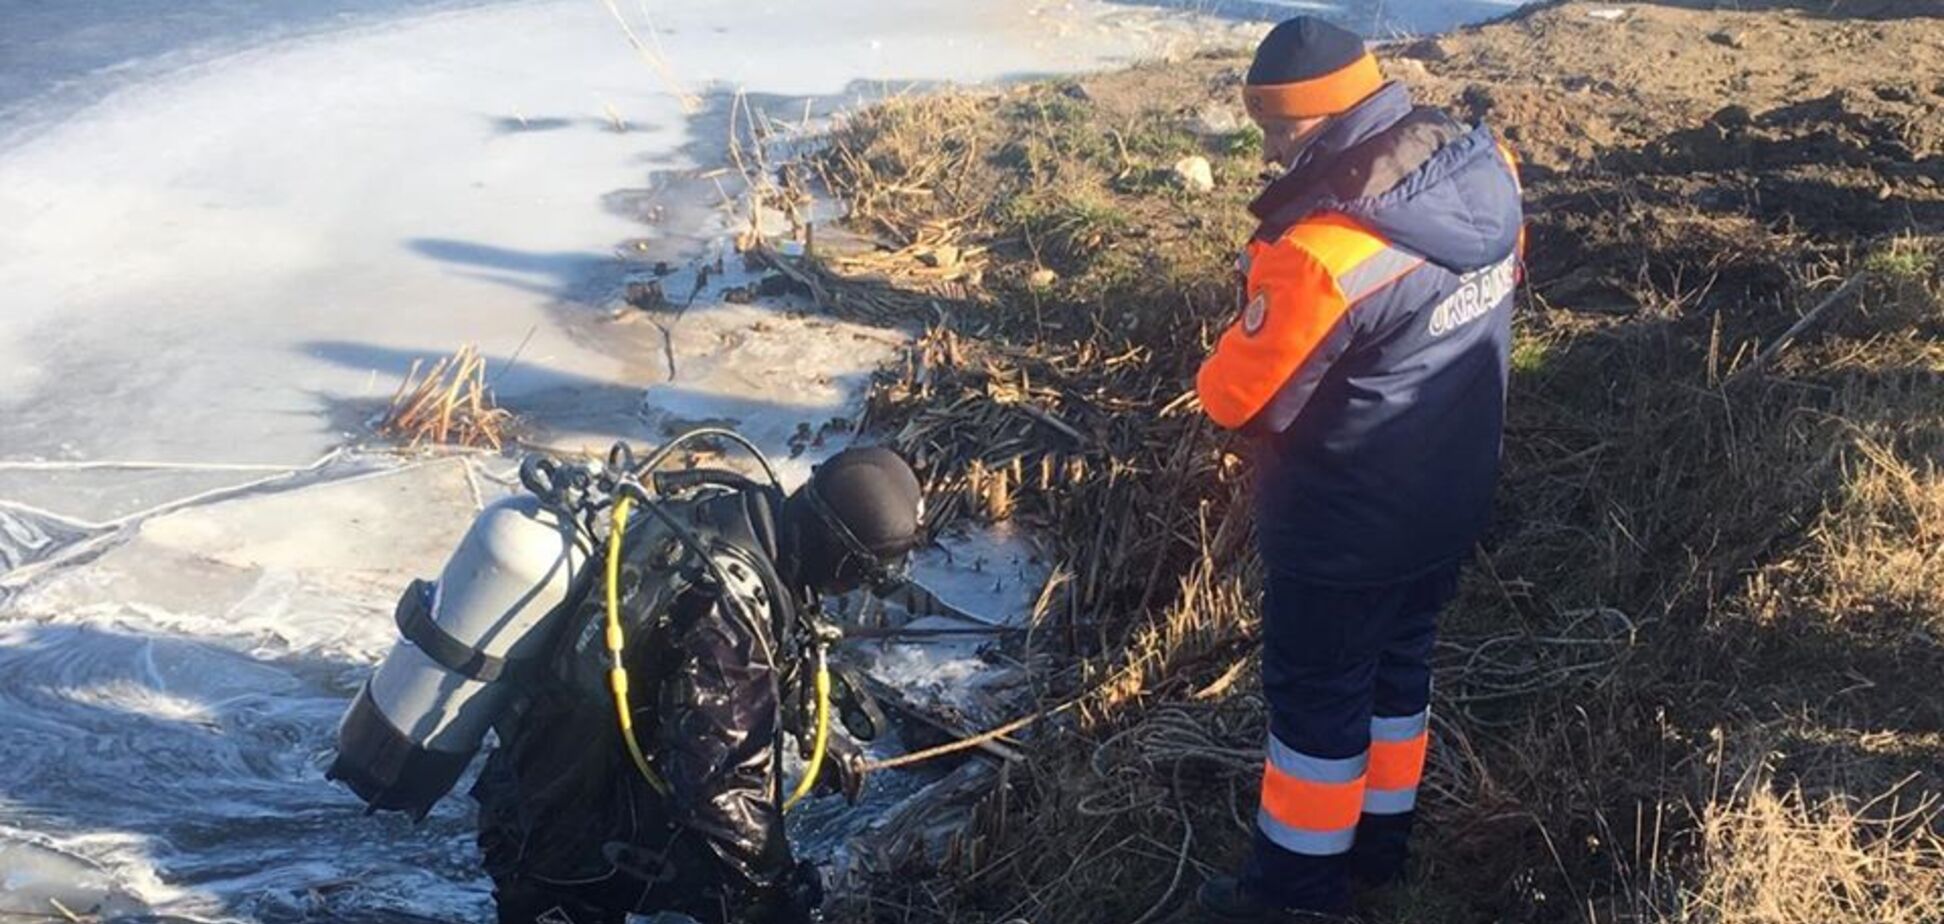 На Київщині знайшли тіло загадково зниклого чоловіка